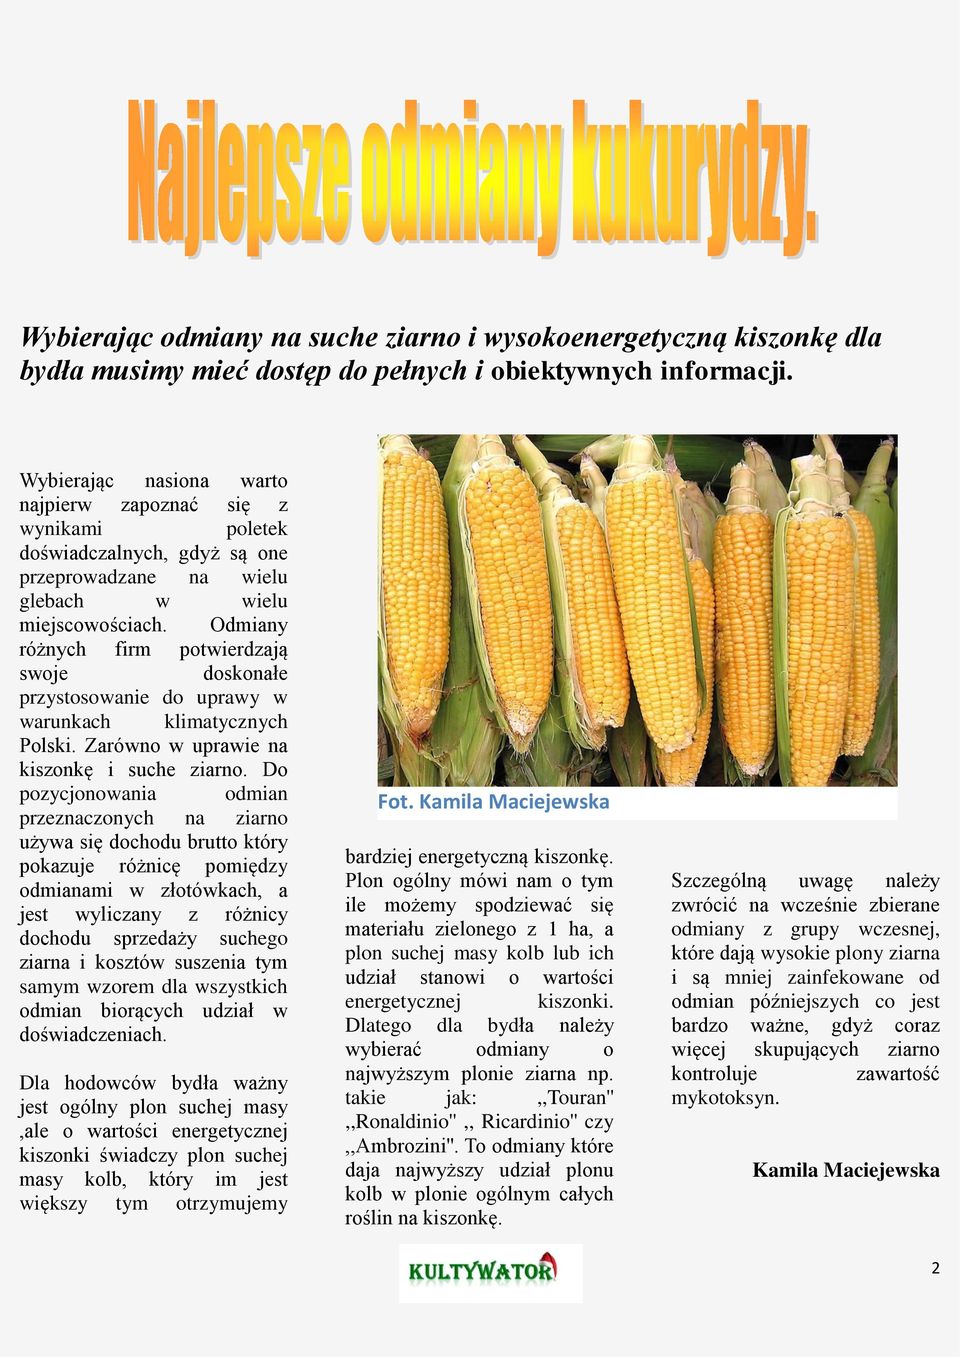 Odmiany różnych firm potwierdzają swoje doskonałe przystosowanie do uprawy w warunkach klimatycznych Polski. Zarówno w uprawie na kiszonkę i suche ziarno.